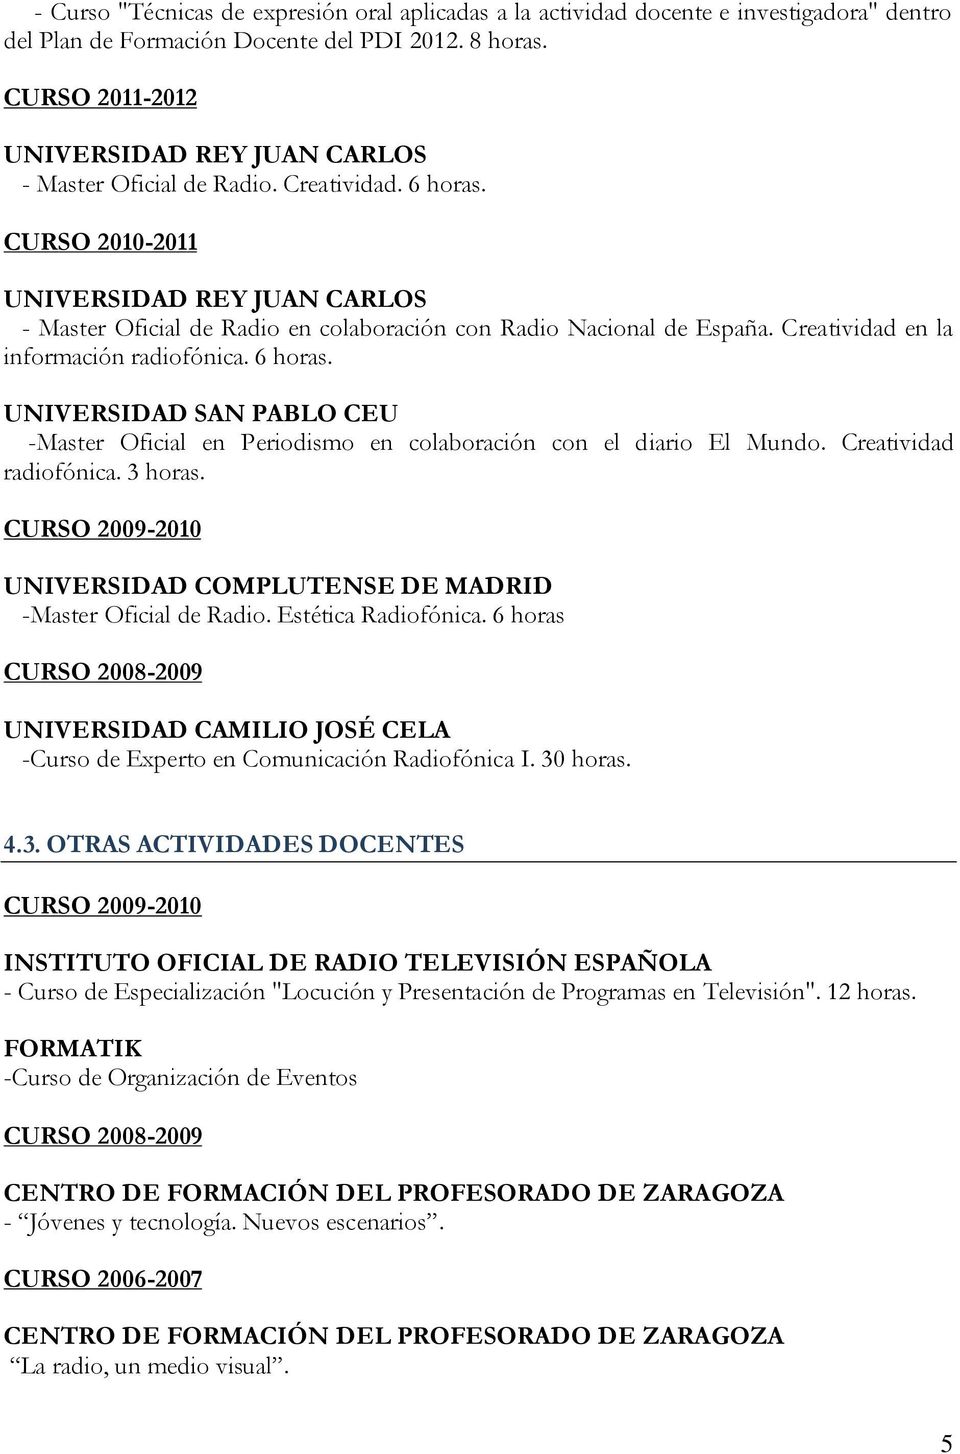 CURSO 2010-2011 UNIVERSIDAD REY JUAN CARLOS - Master Oficial de Radio en colaboración con Radio Nacional de España. Creatividad en la información radiofónica. 6 horas.